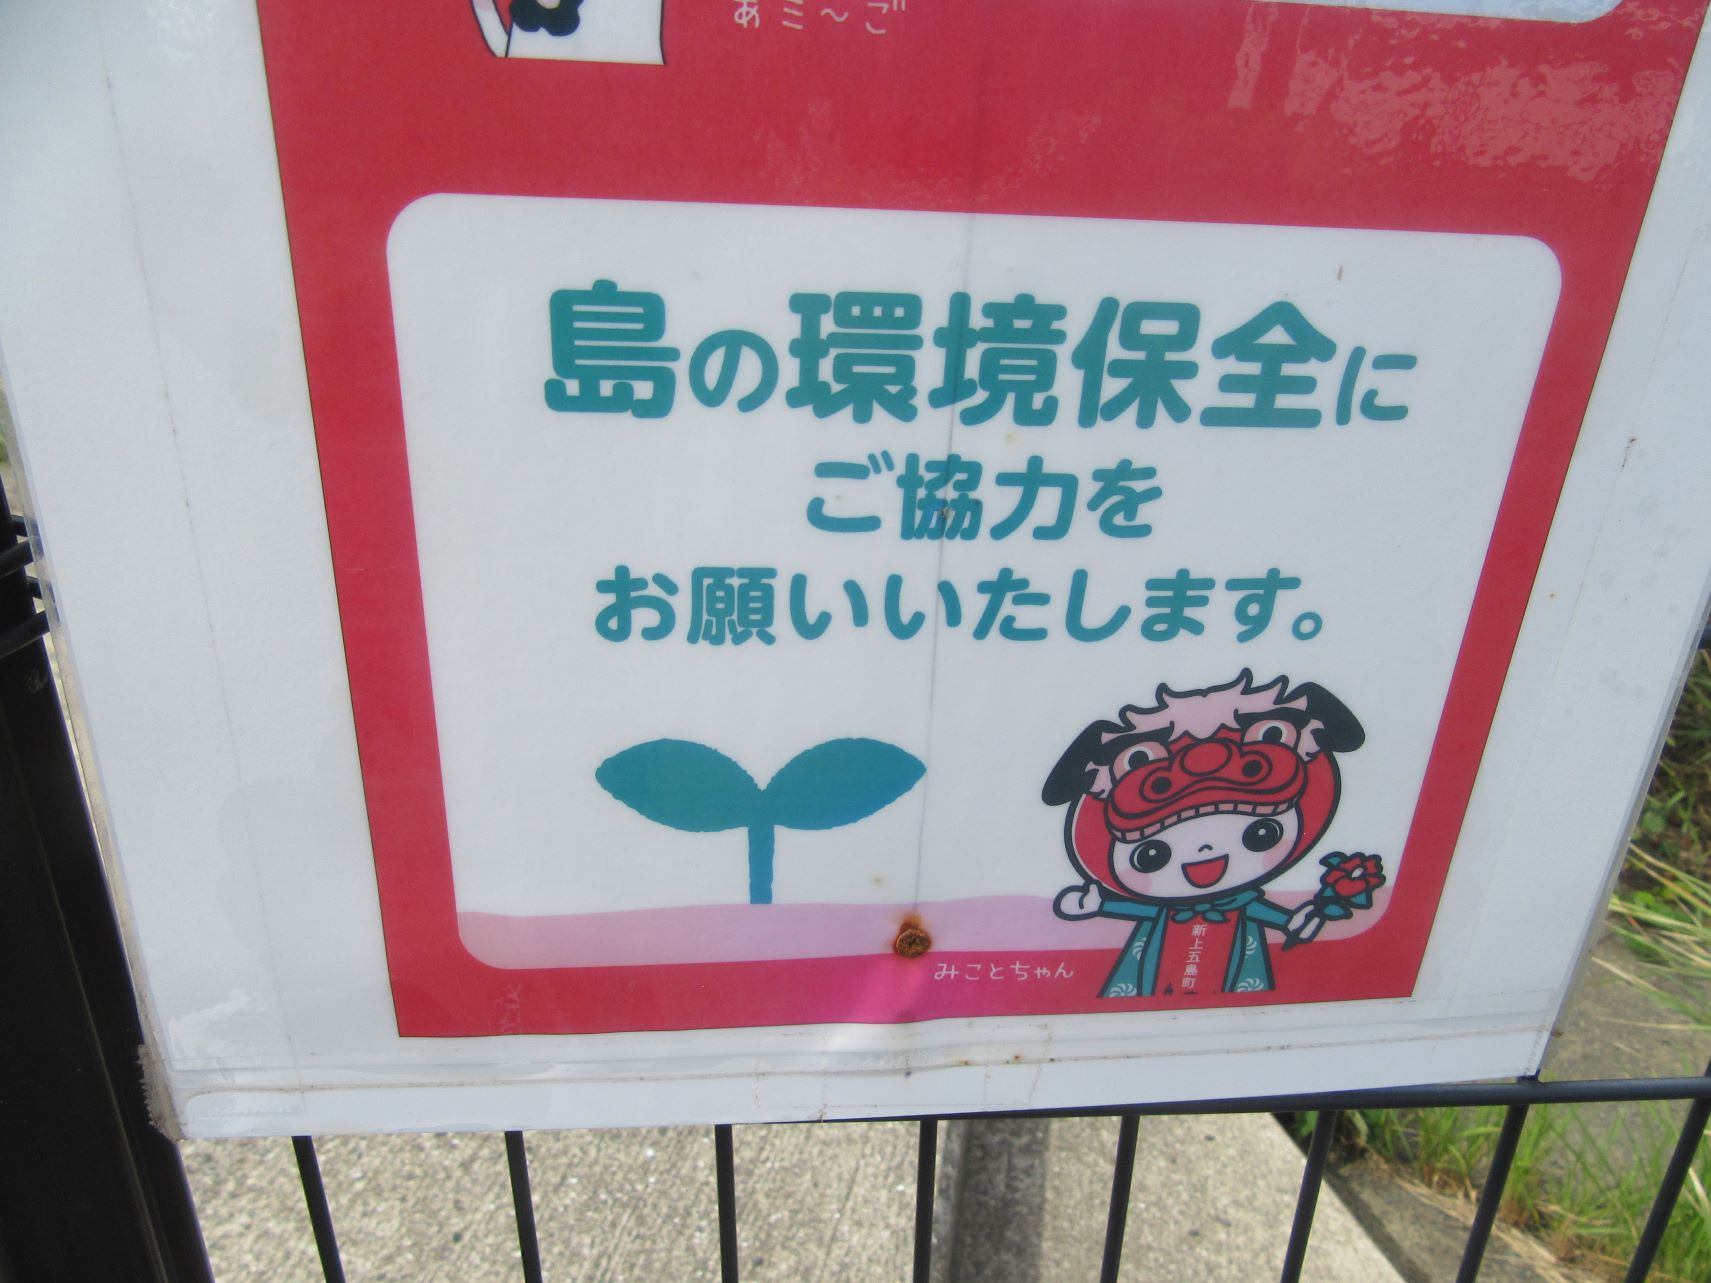 長崎県南松浦郡新上五島町にある、頭ヶ島天主堂付近の駐車場にある看板にいた、新上五島町公式キャラクターの『みことちゃん』。